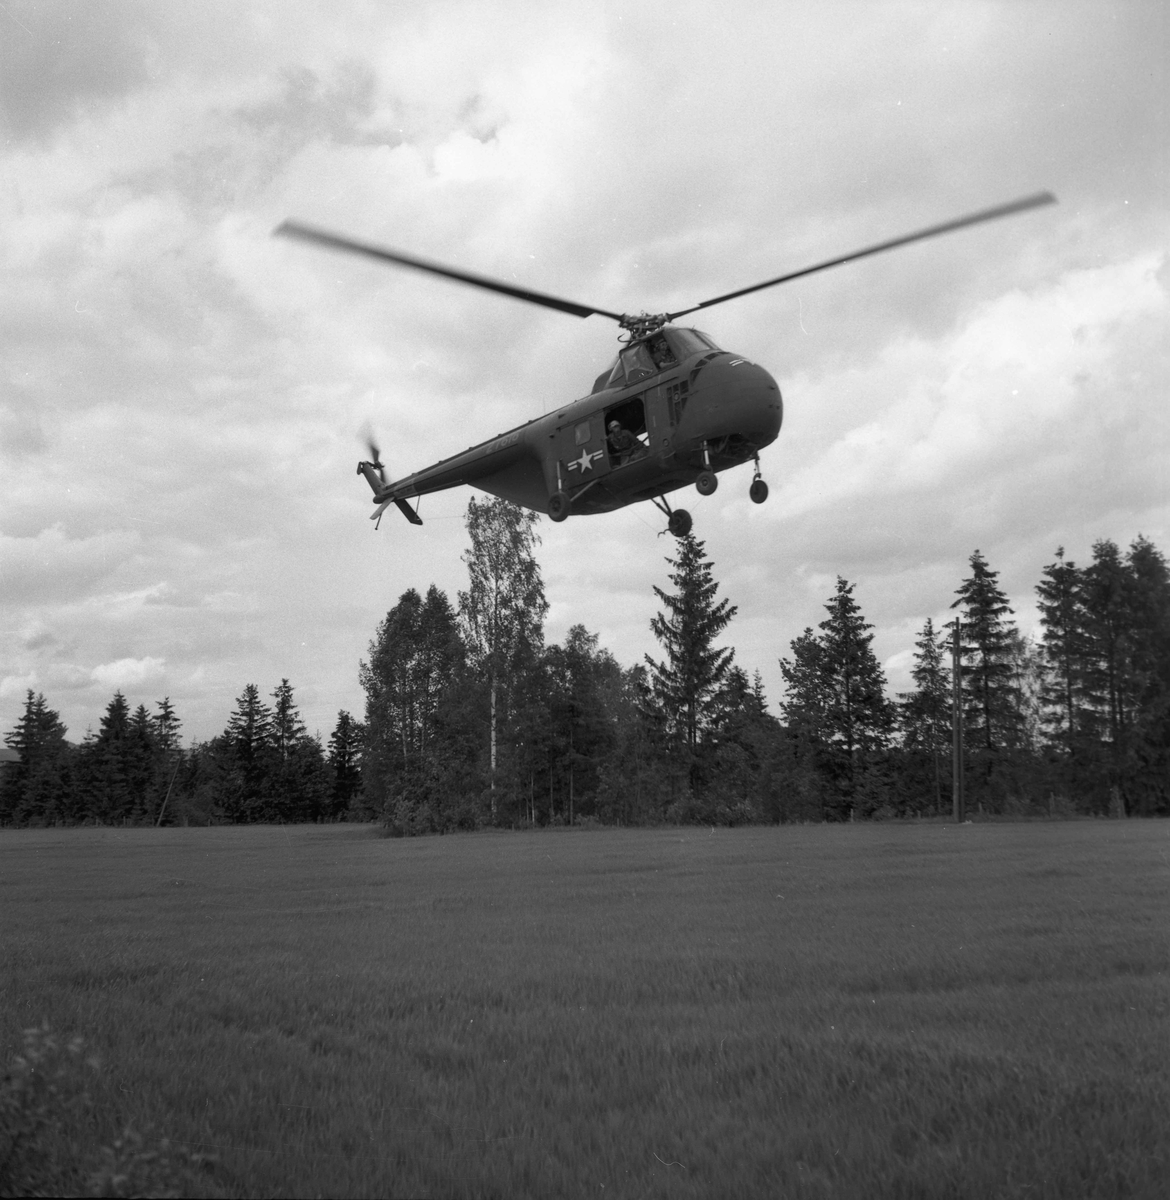 Sommeren 1955 fraktet et helikopter fra US Army utstyr og materialer fra Dokkenmoen til Mistbergtoppen. Det ble bygd en radiolinkstasjon el.likn. på toppen. Også i 1957 fraktet amerikanske helikoptre materialer til Mistbergtoppen. Dette var utvilsomt militære anlegg, en del av NATO-samarbeidet.